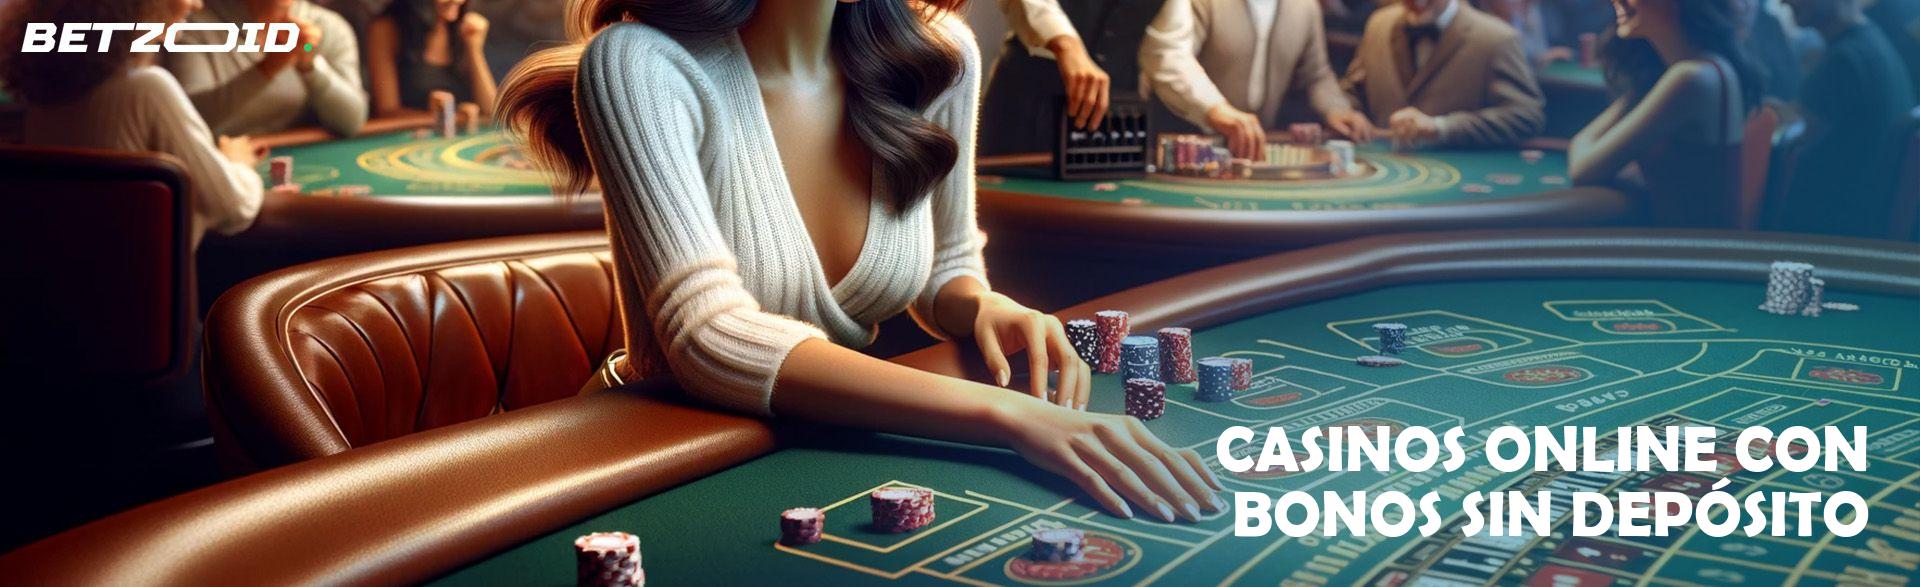 Casinos Online con Bonos sin Depósito.